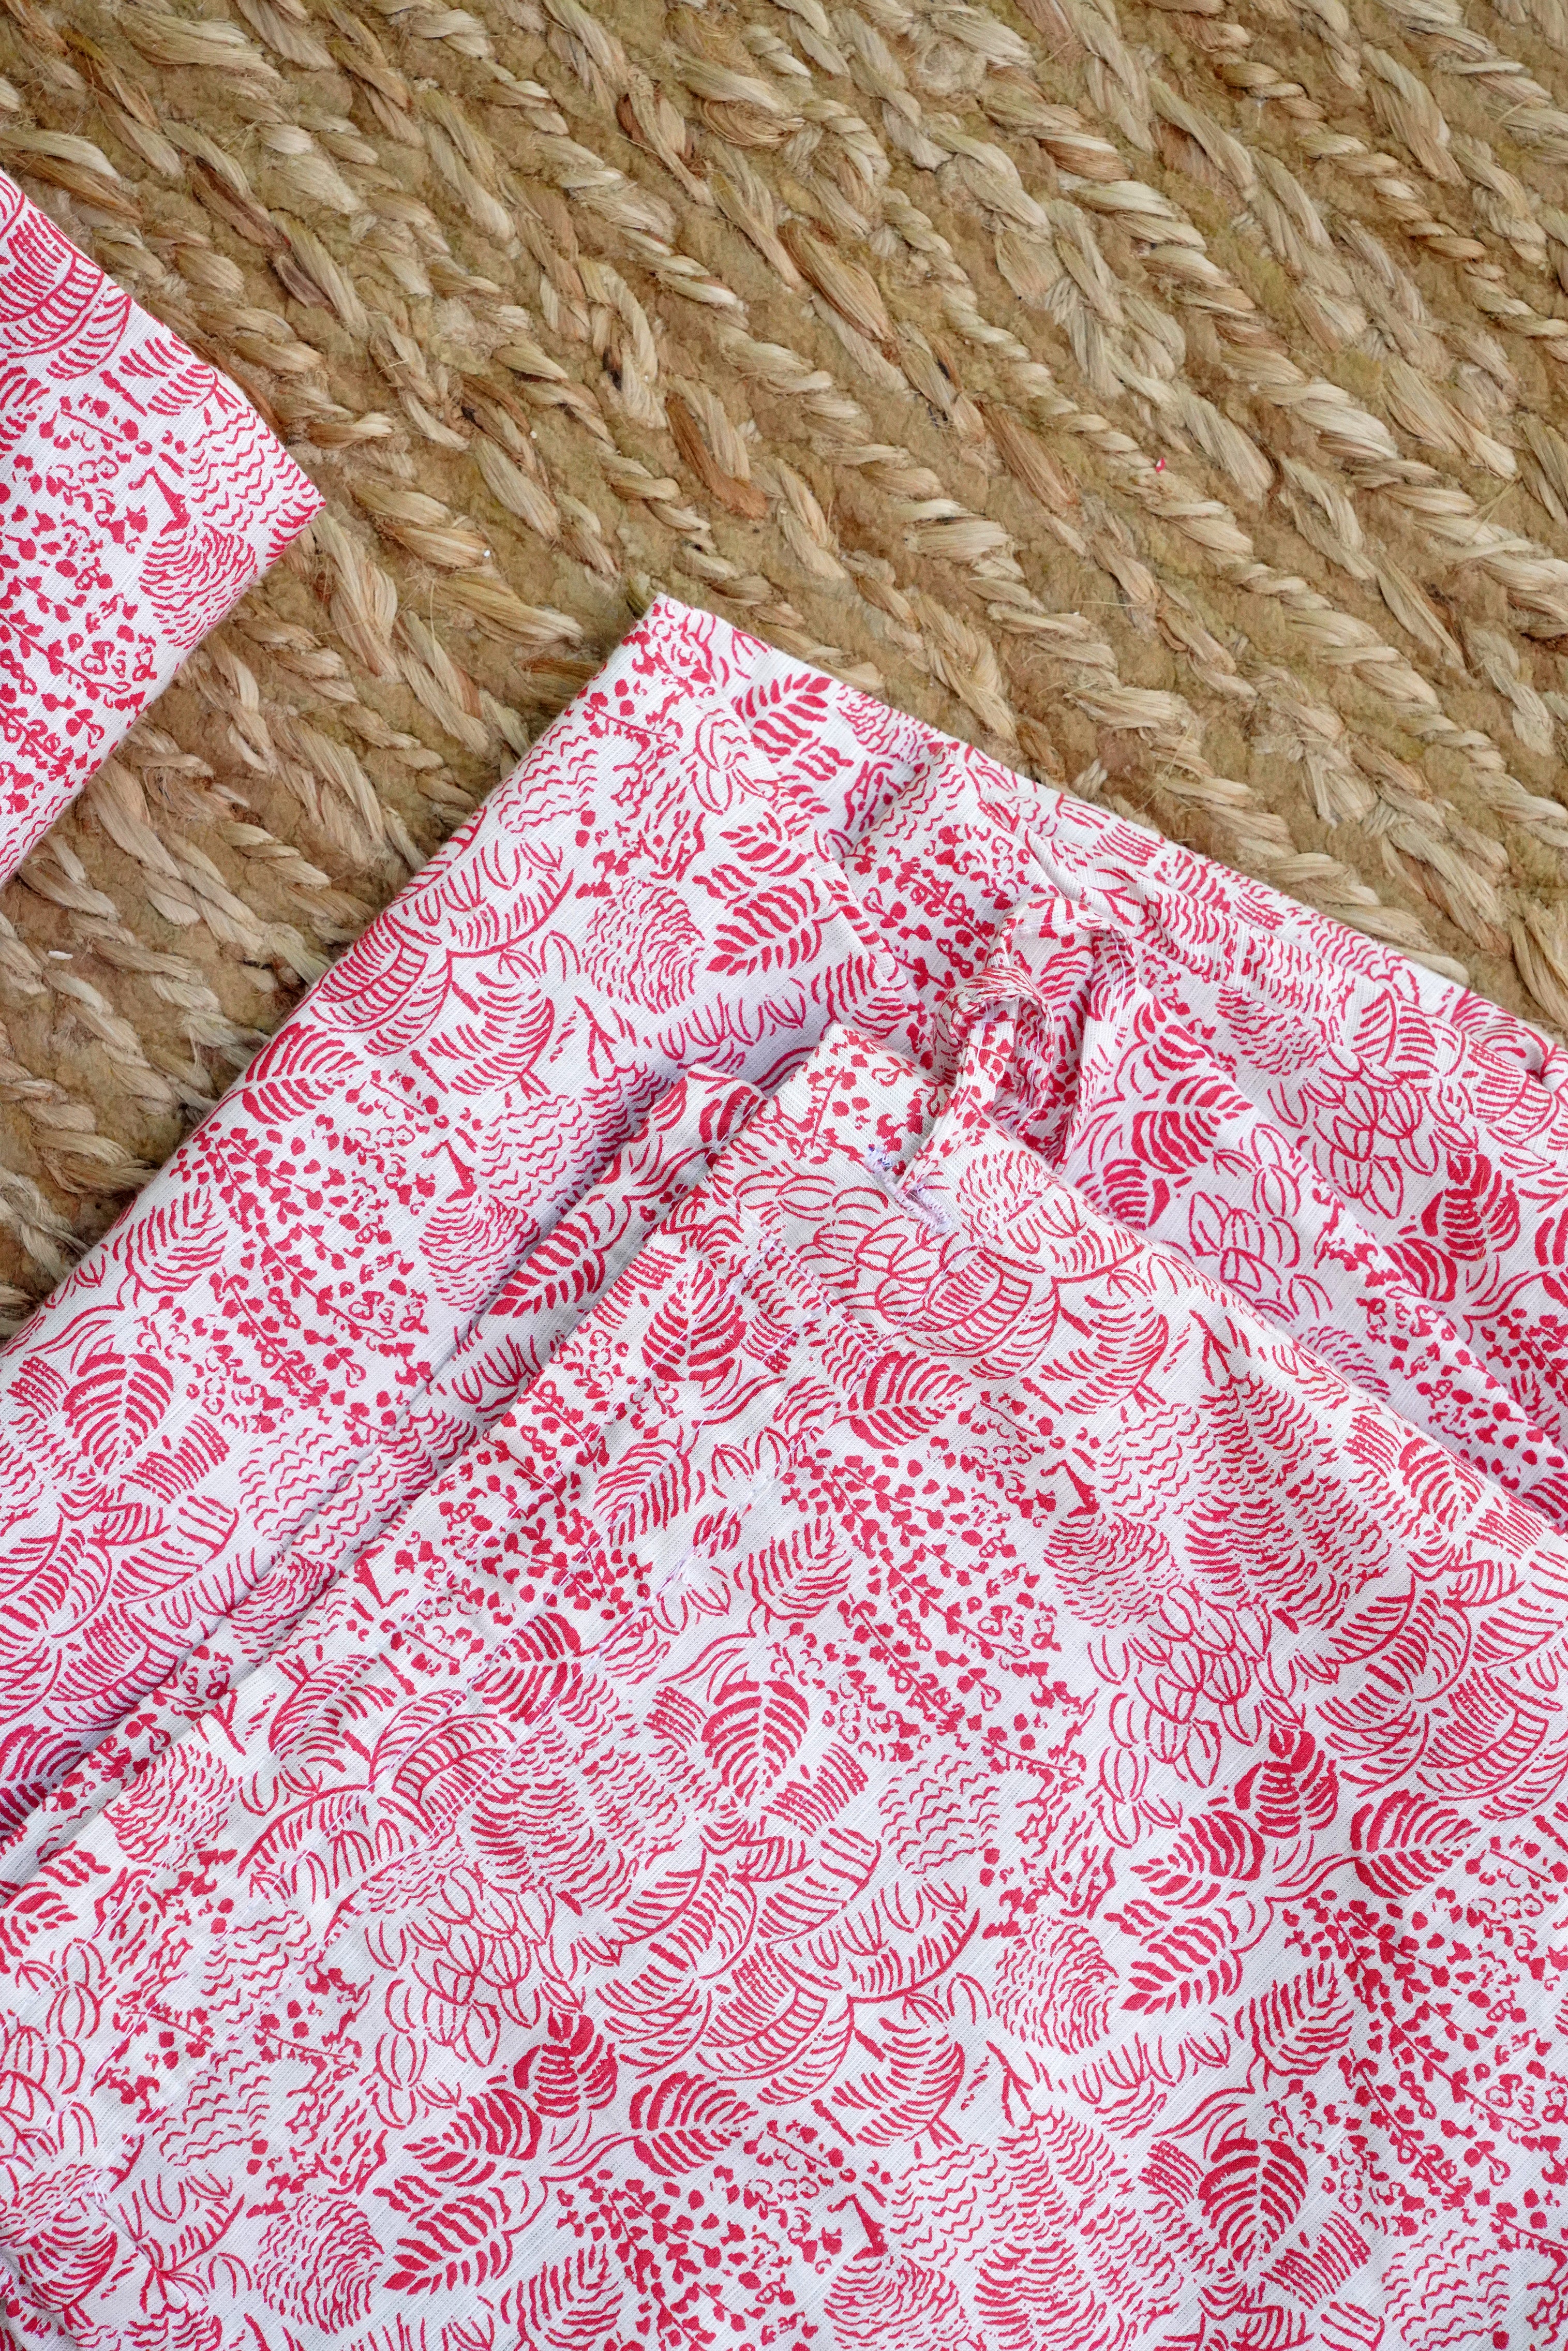 MINI ME- Tropical Multi-Leaf Print Pyjama Set